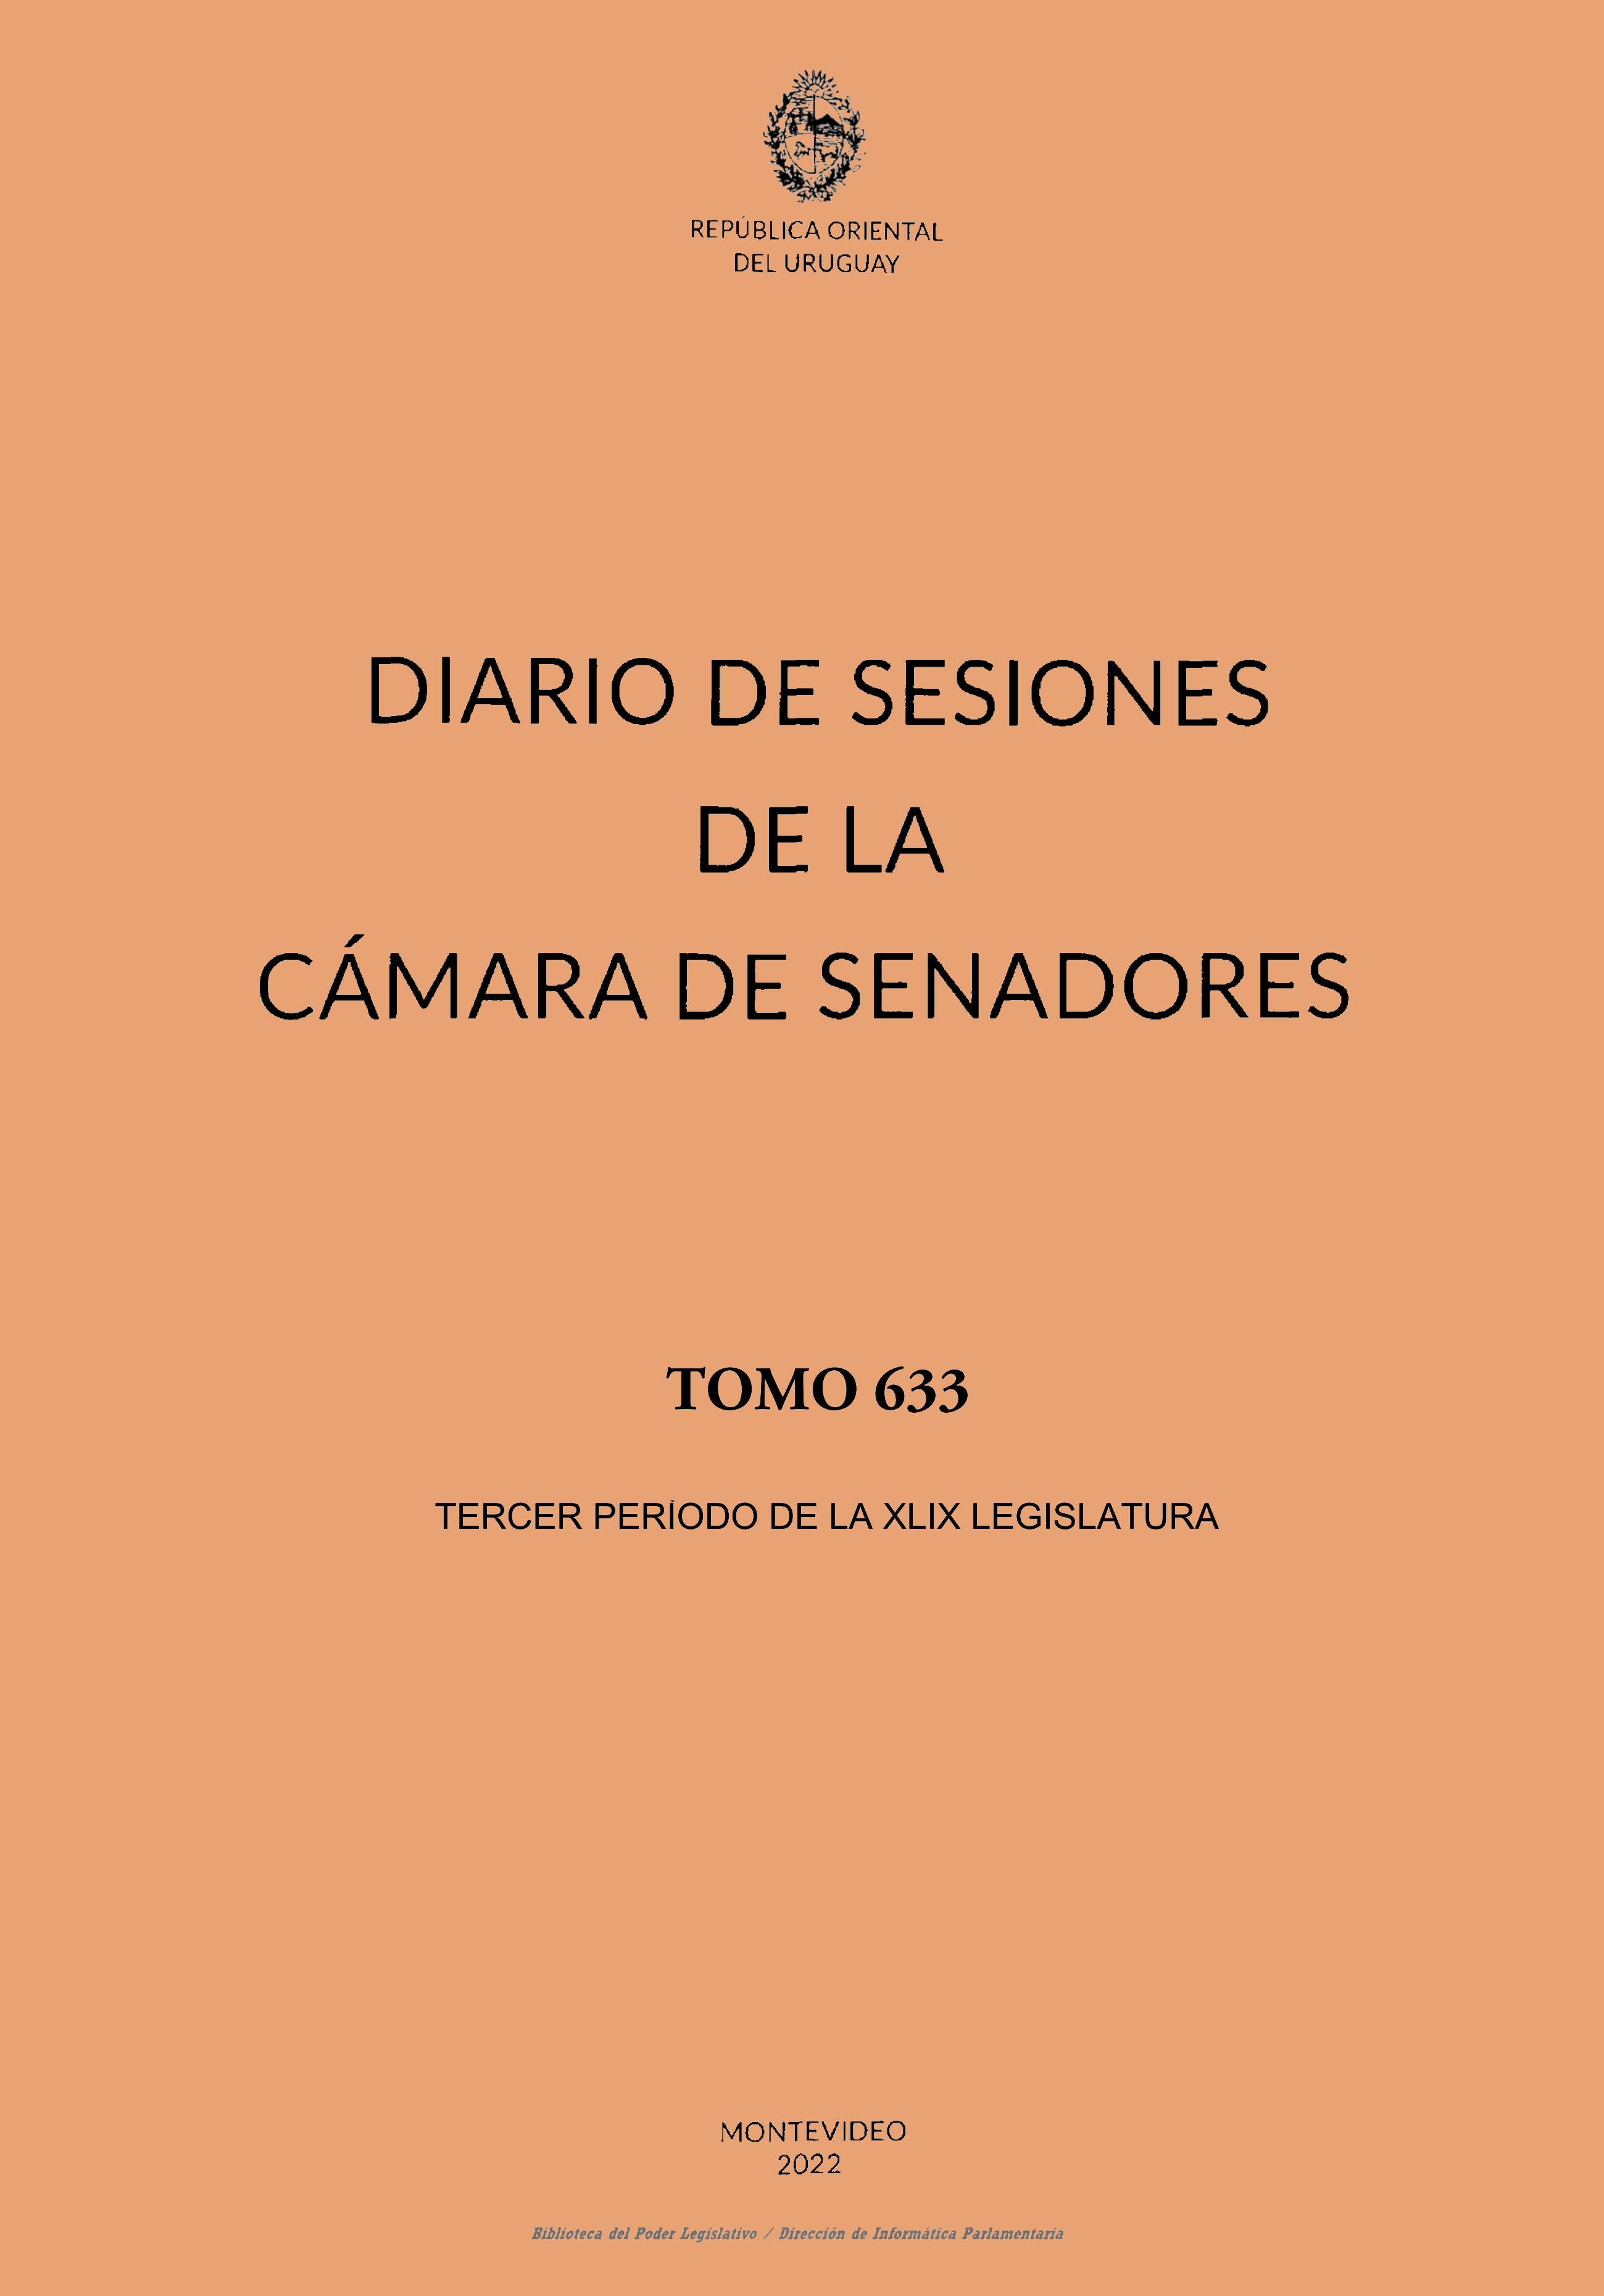 DIARIO DE SESIONES DE LA CAMARA DE SENADORES del 28/12/2022